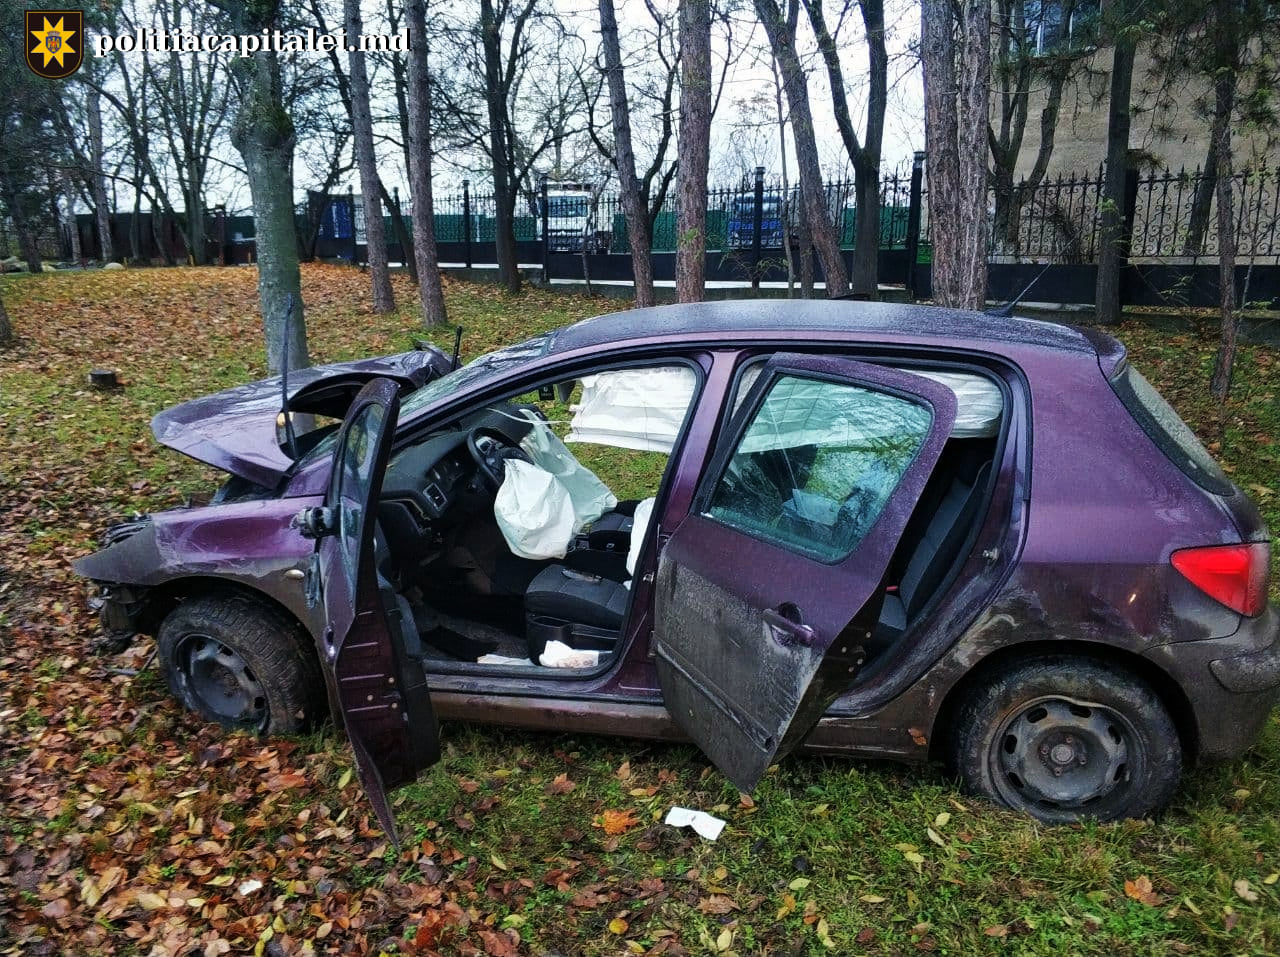 Un șofer beat s-a izbit cu mașina într-un pilon electric. Pasagera sa minoră a ajuns la spital (FOTO)